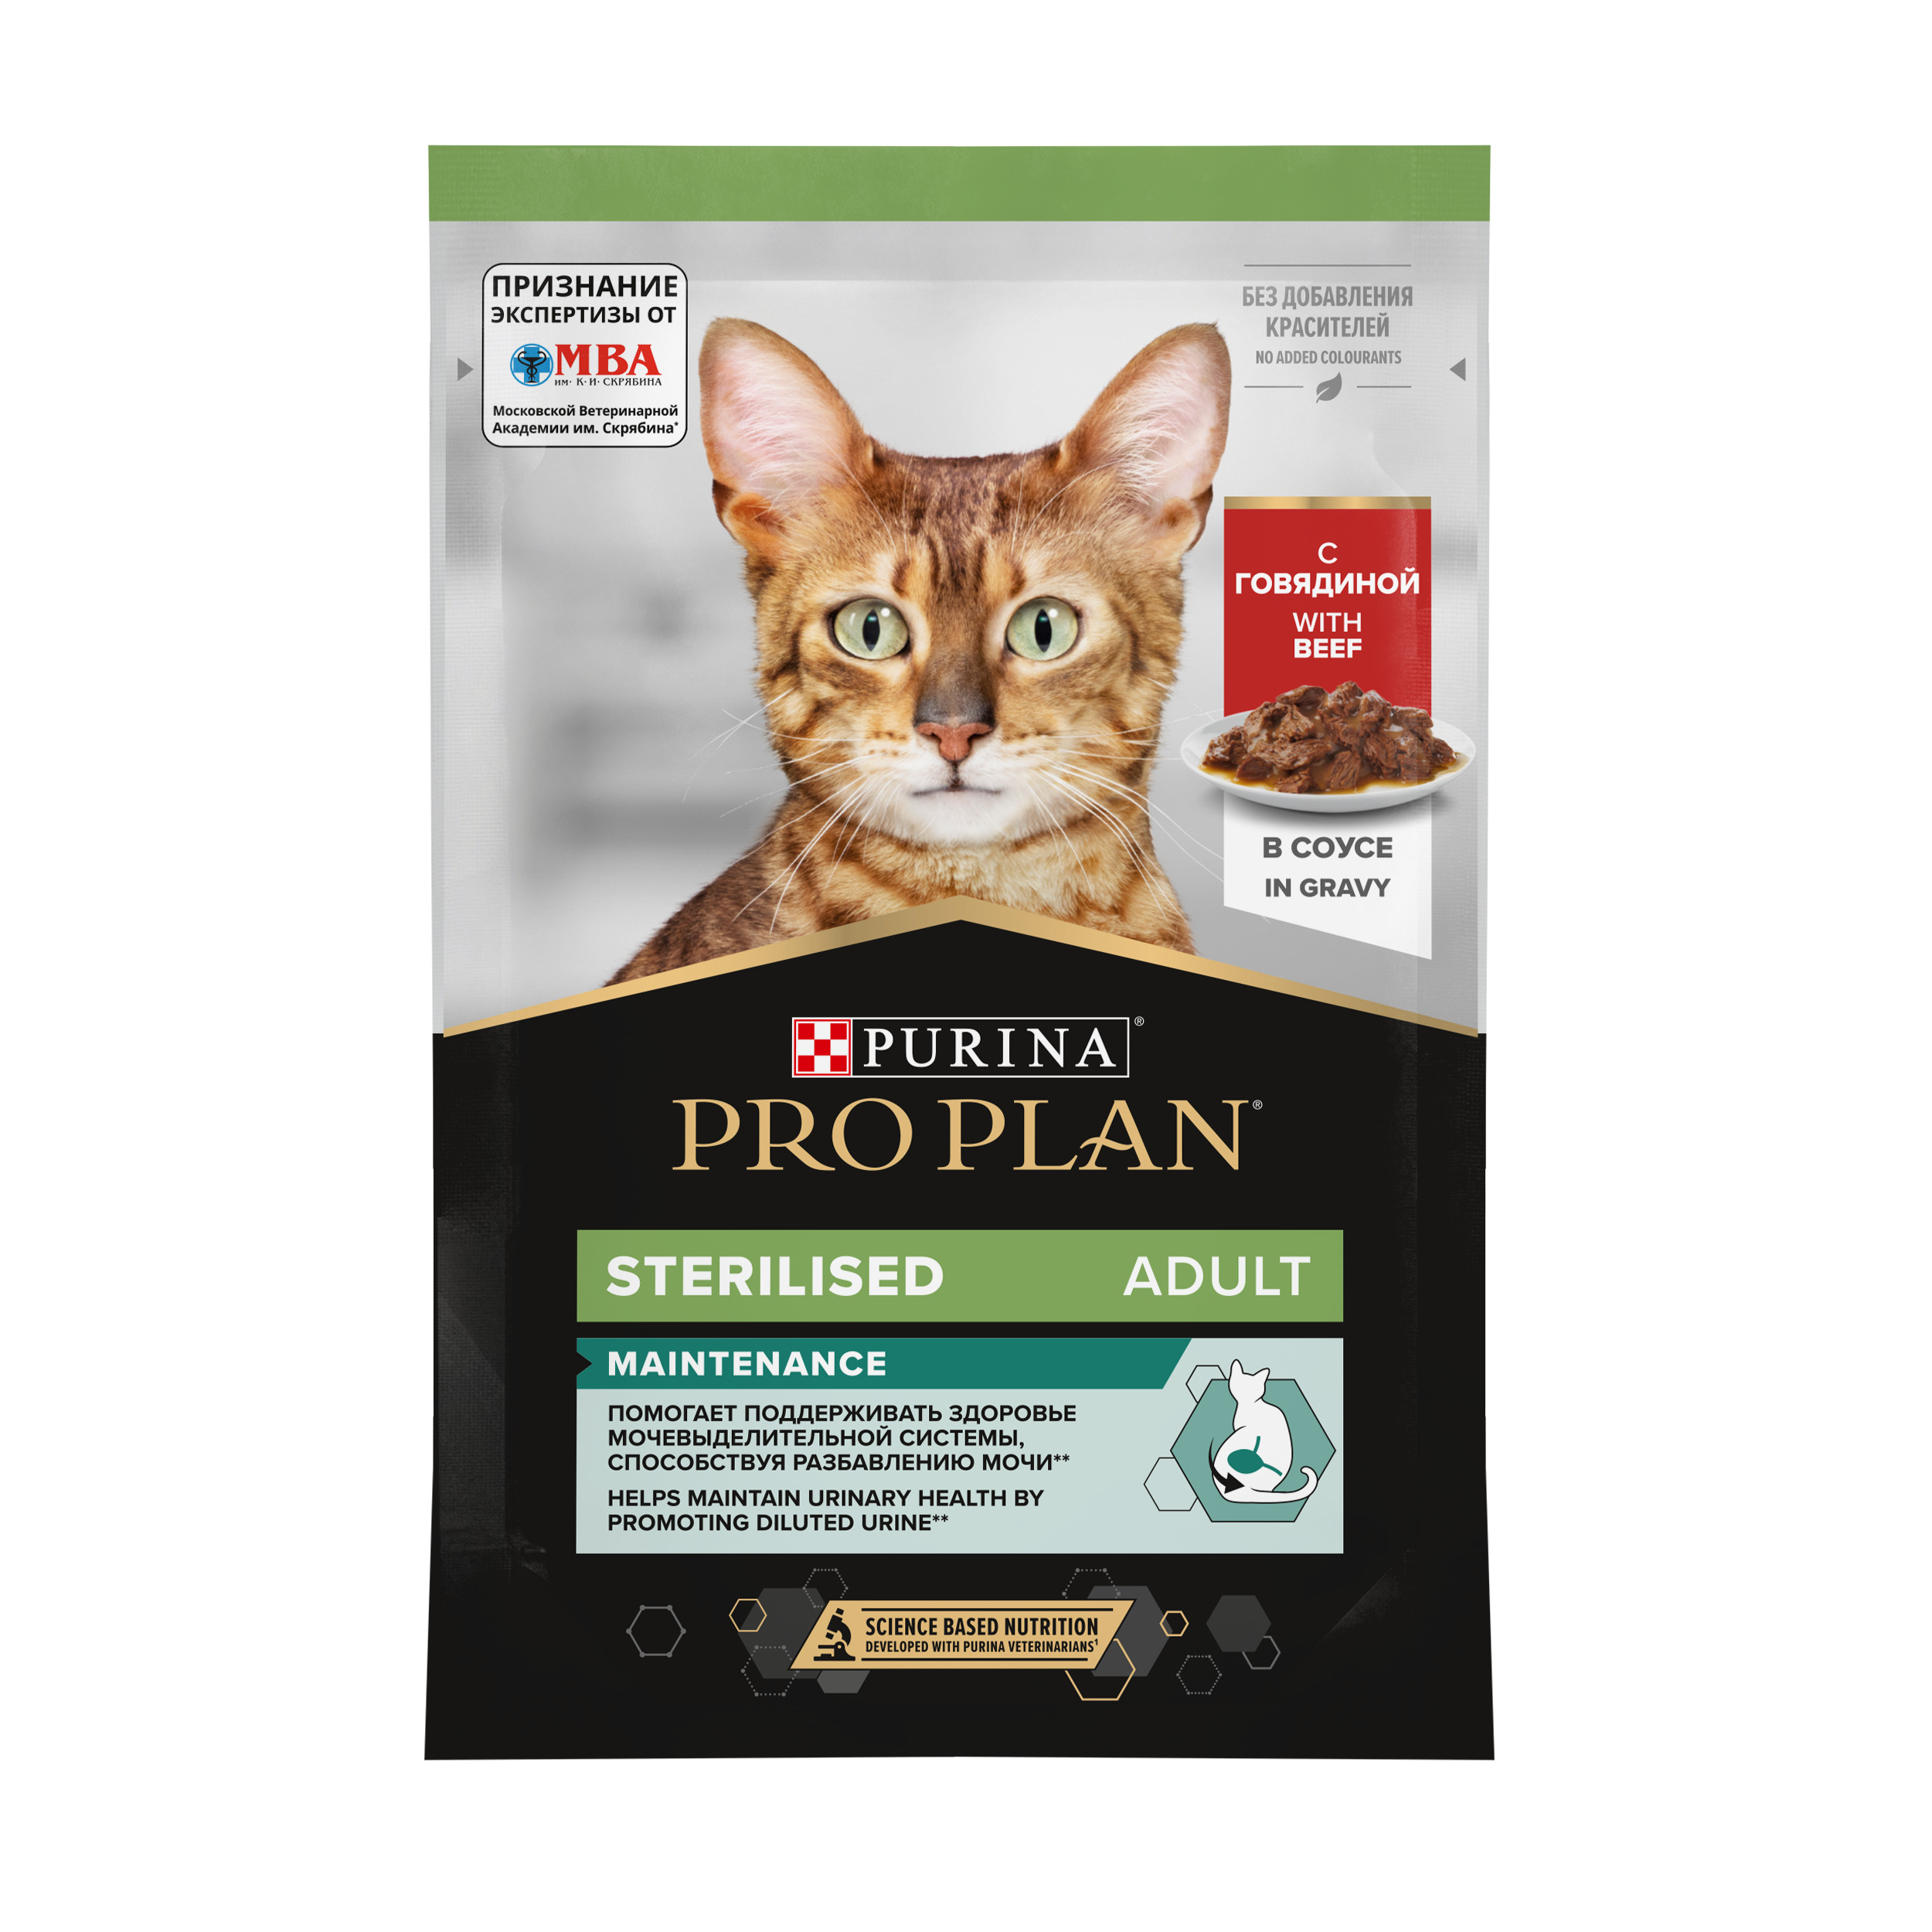 Повседневный корм Pro Plan (Про План) для кошки